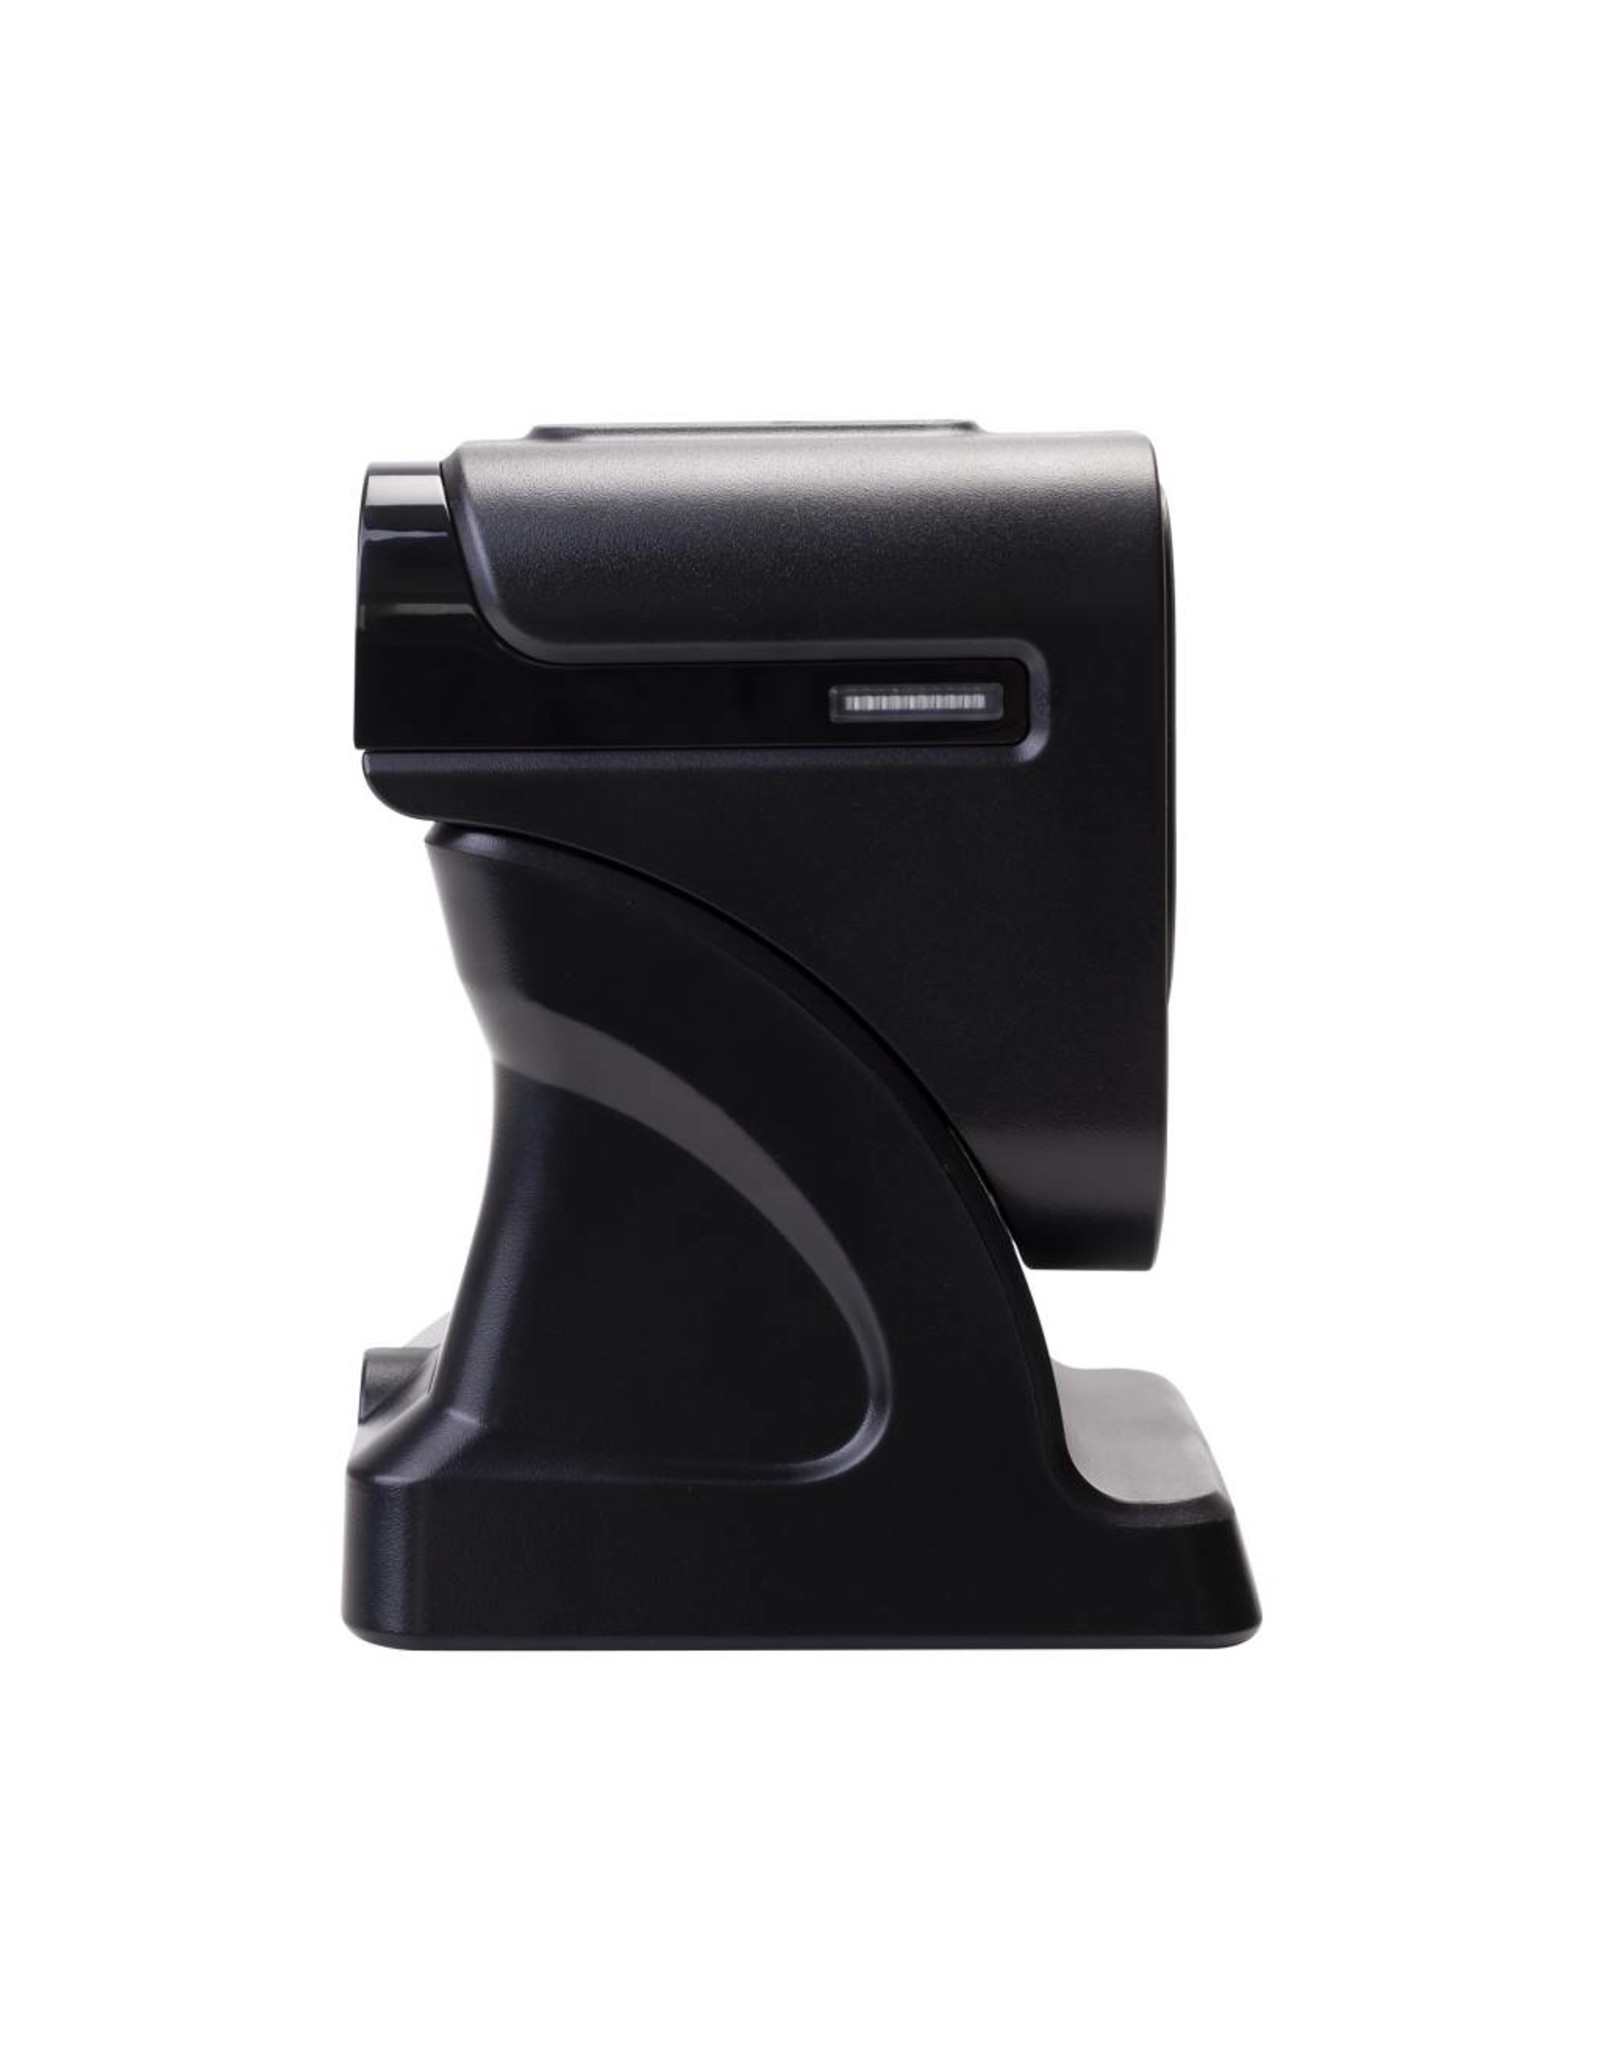 DTRONIC DTRONIC MP6200  - Stand-Alone Barcodescanner  - Hoge Frequentie  - Flexibele Hoeken  - Multi-Platform Ondersteuning